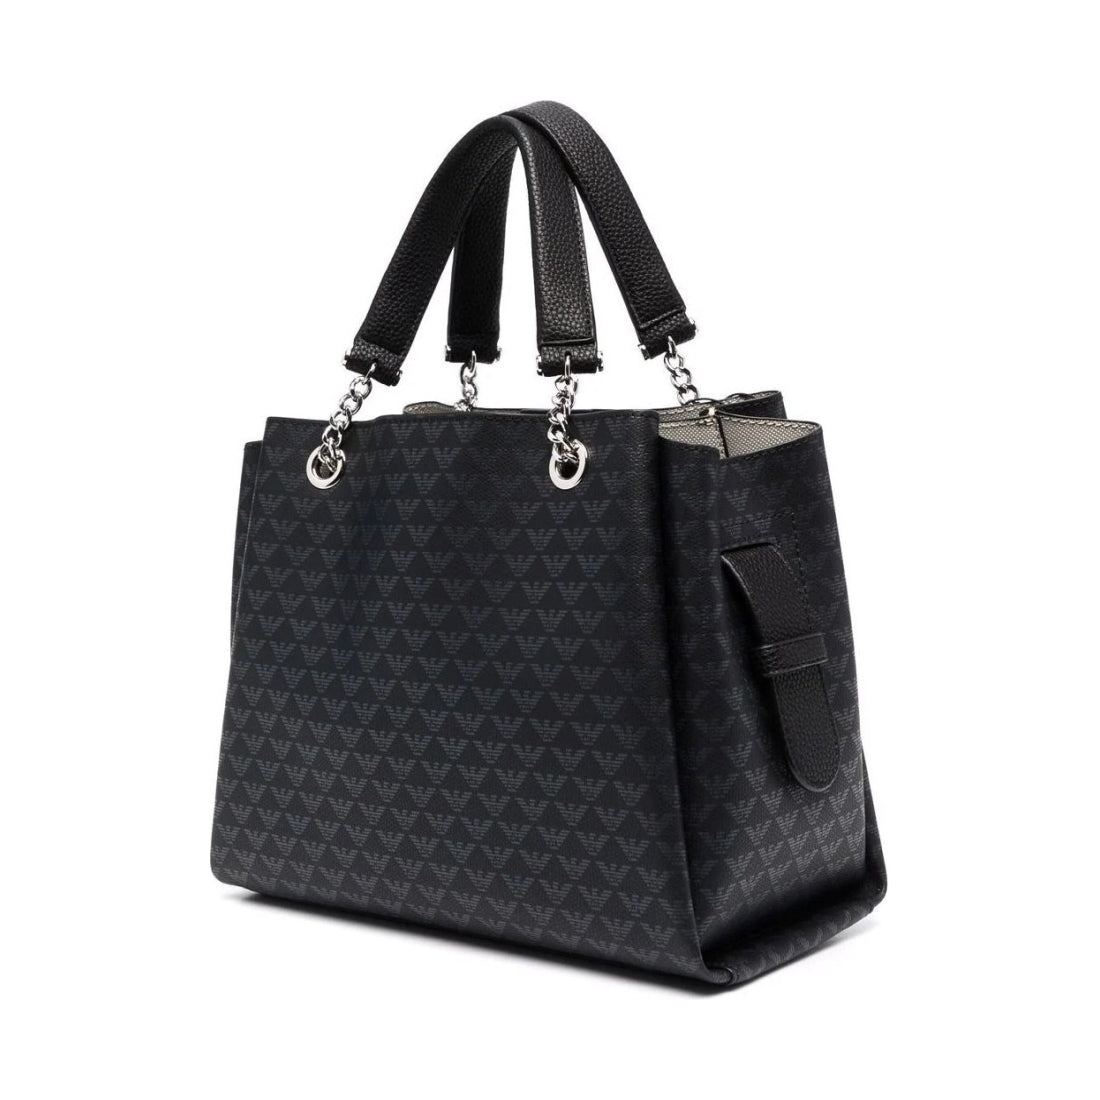 Emporio Armani womens nero shopping bag | Vilbury London